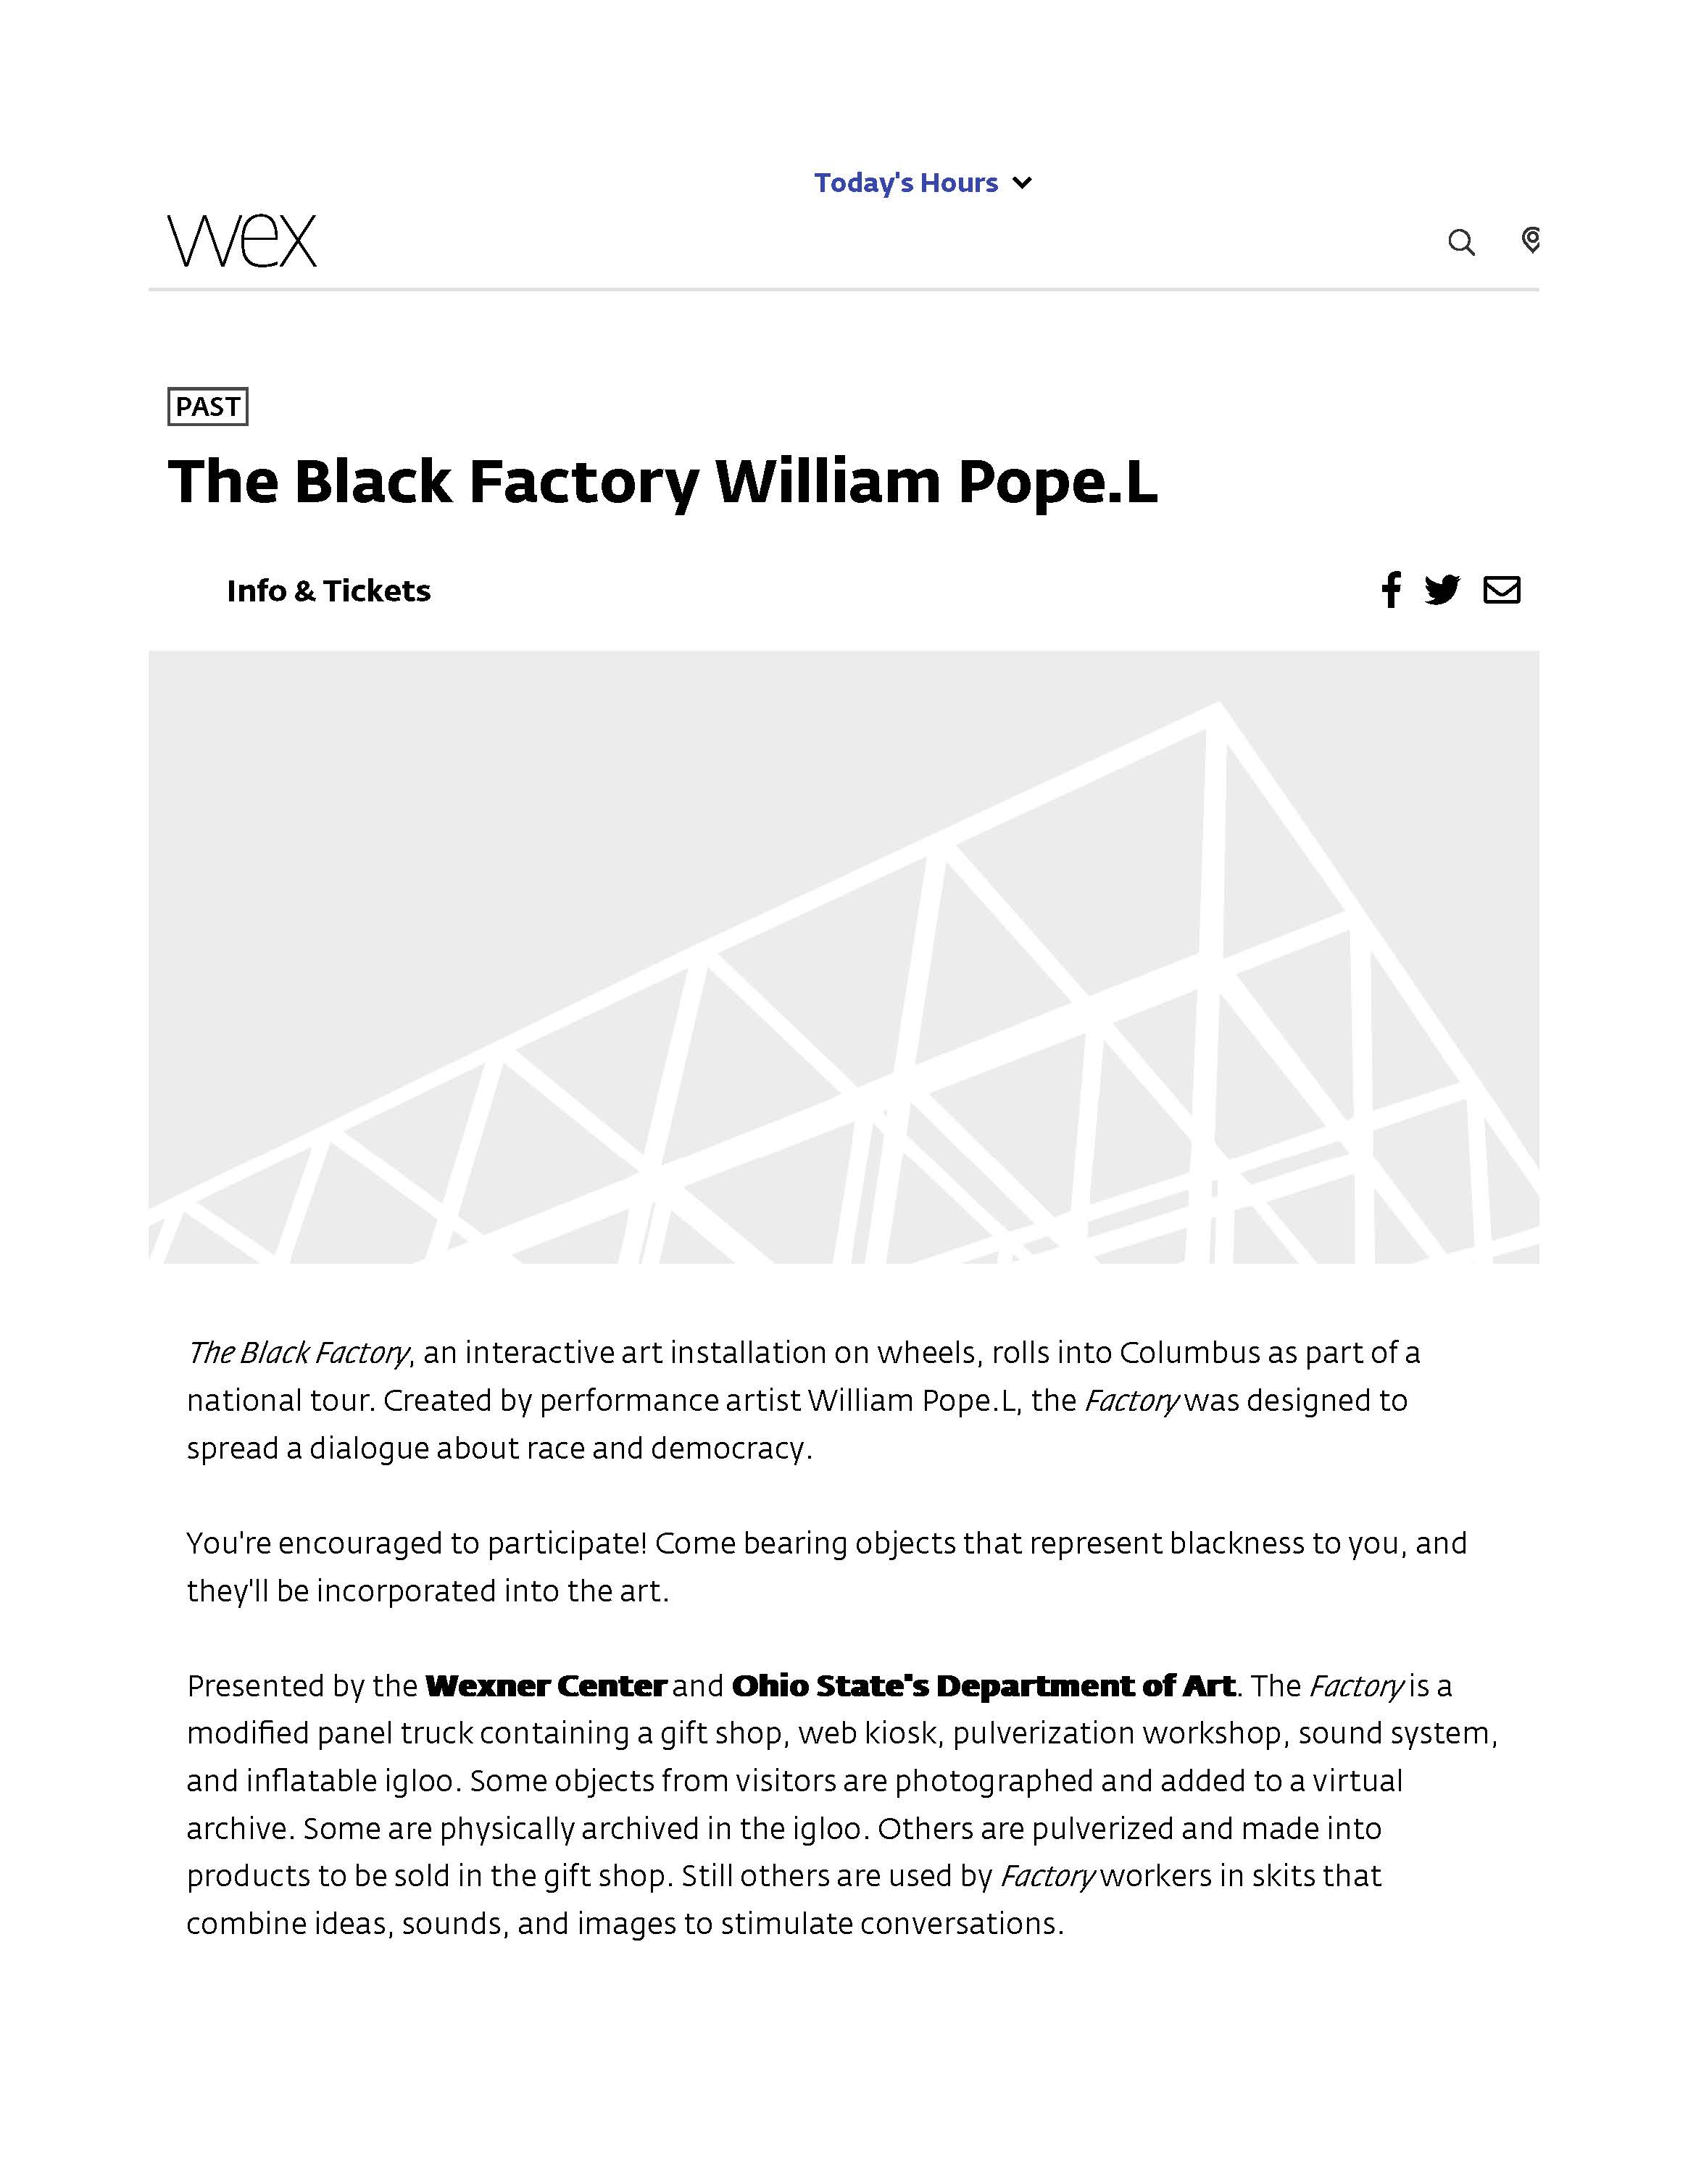 William Pope.L, The Black Factory, 2005